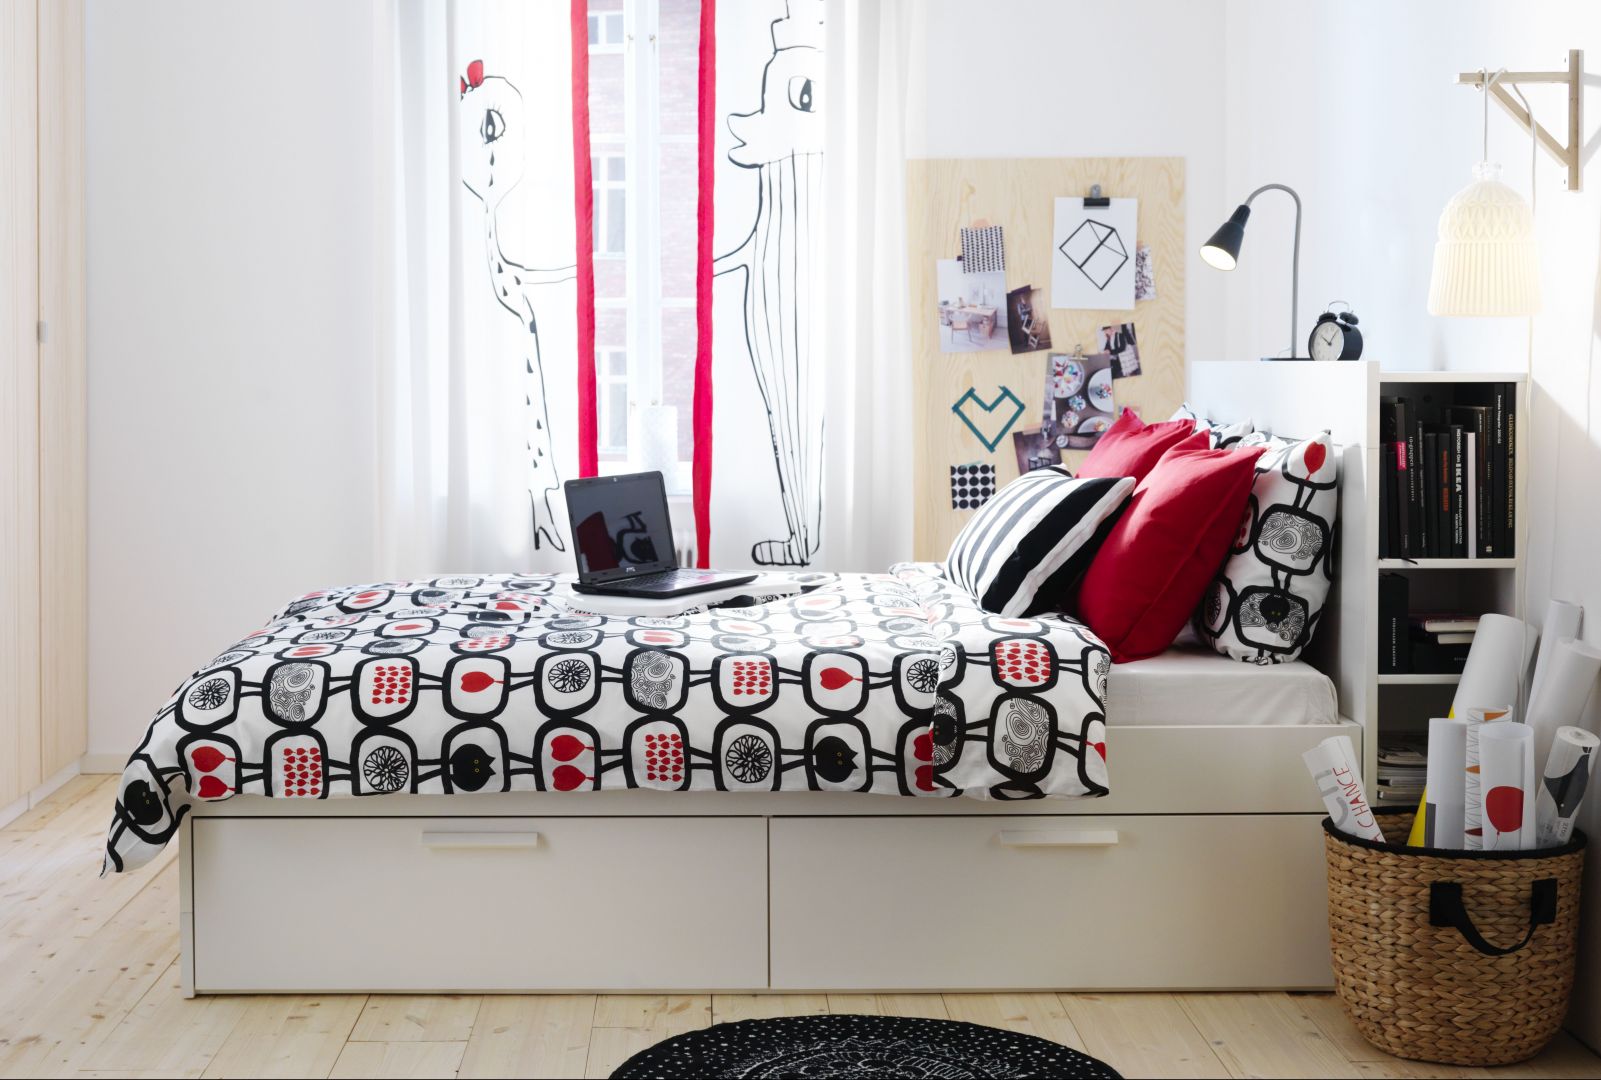 Łóżko Brimnes. 4 duże szuflady zapewniają dodatkową przestrzeń do przechowywania pod łóżkiem, marki IKEA
Fot. IKEA